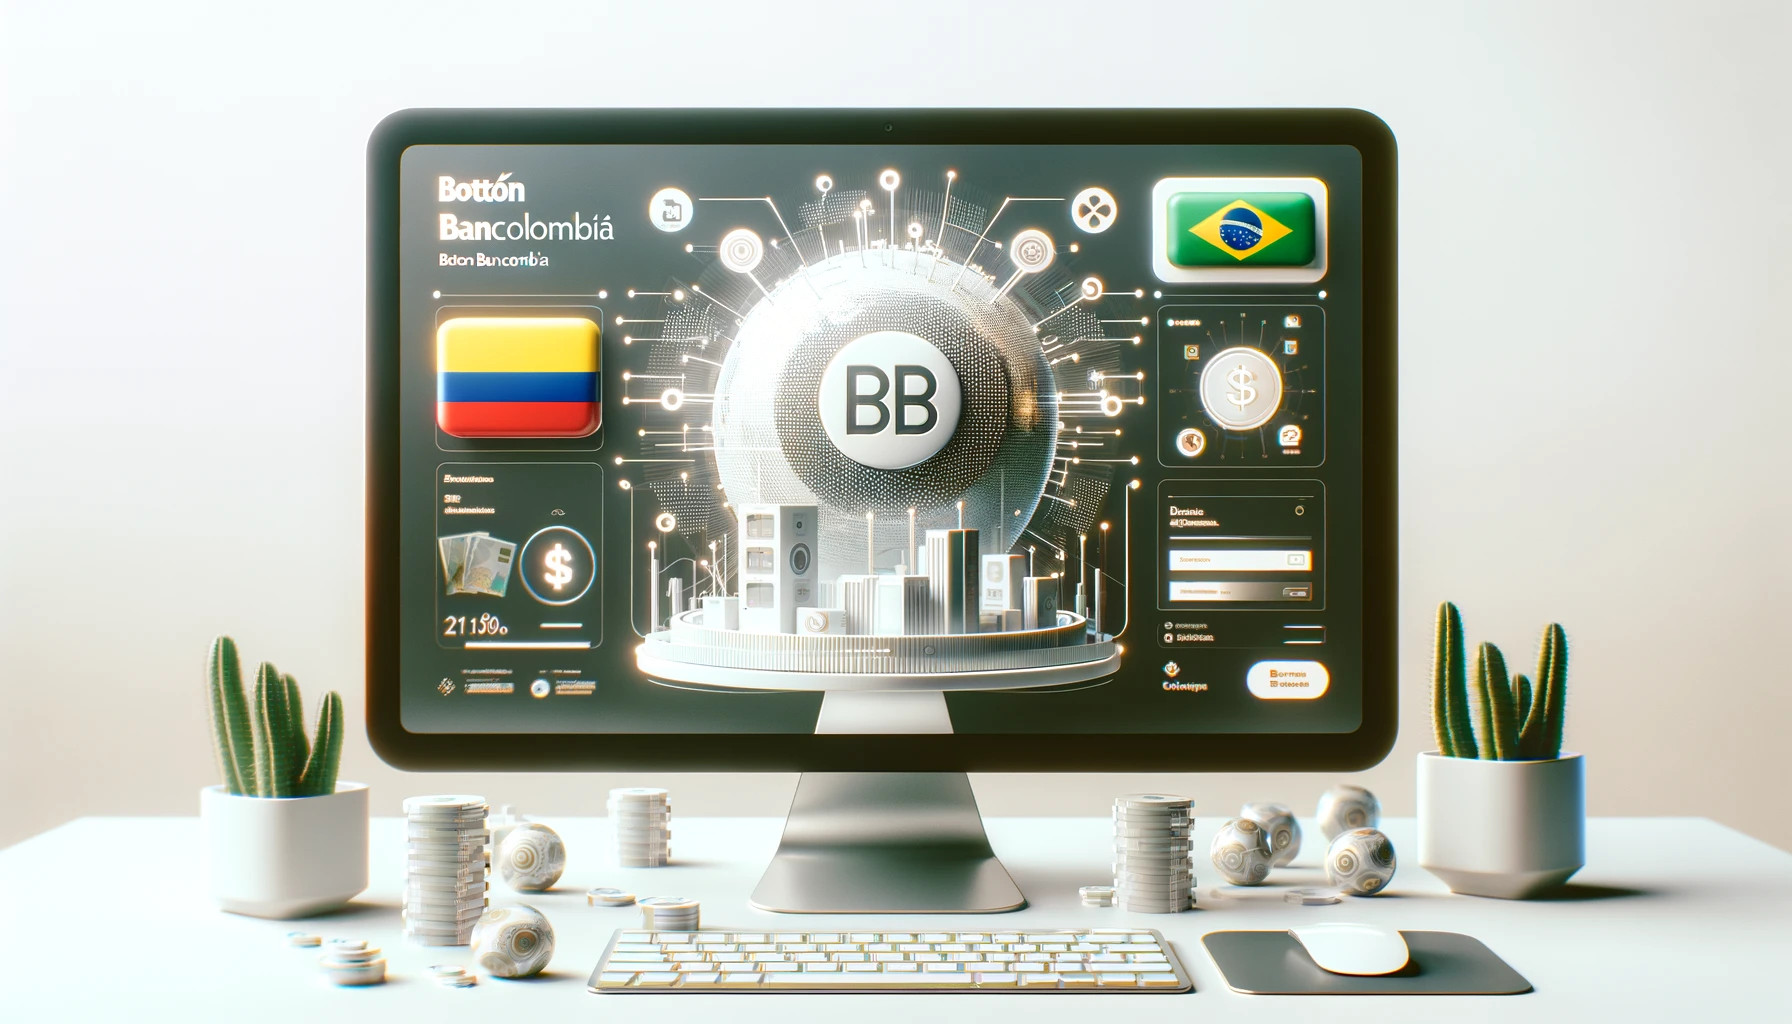 Ebanx Integra O Botón Bancolombia Para Melhorar As Opções De Pagamento